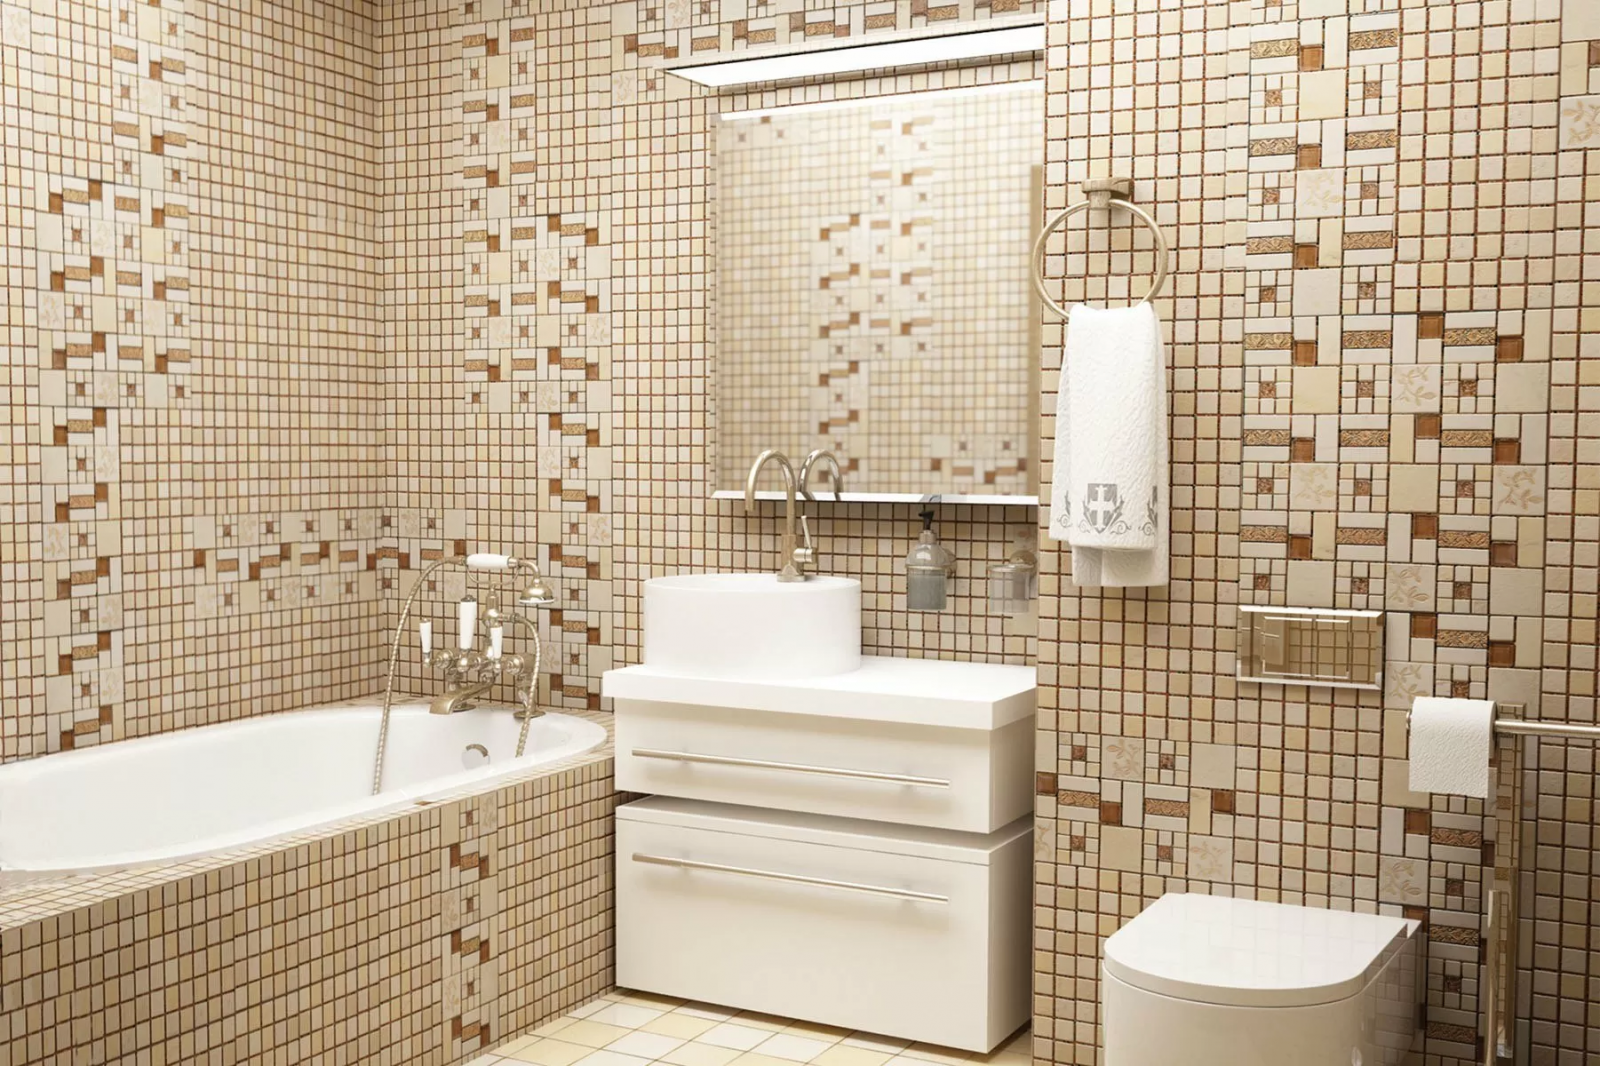 Купить мозаику для ванной plitka mosaica ru. Мозаика natural Mosaic. Мозаика в ванной комнате. Мозаичная плитка в ванной комнате. Ванна с мозаикой.